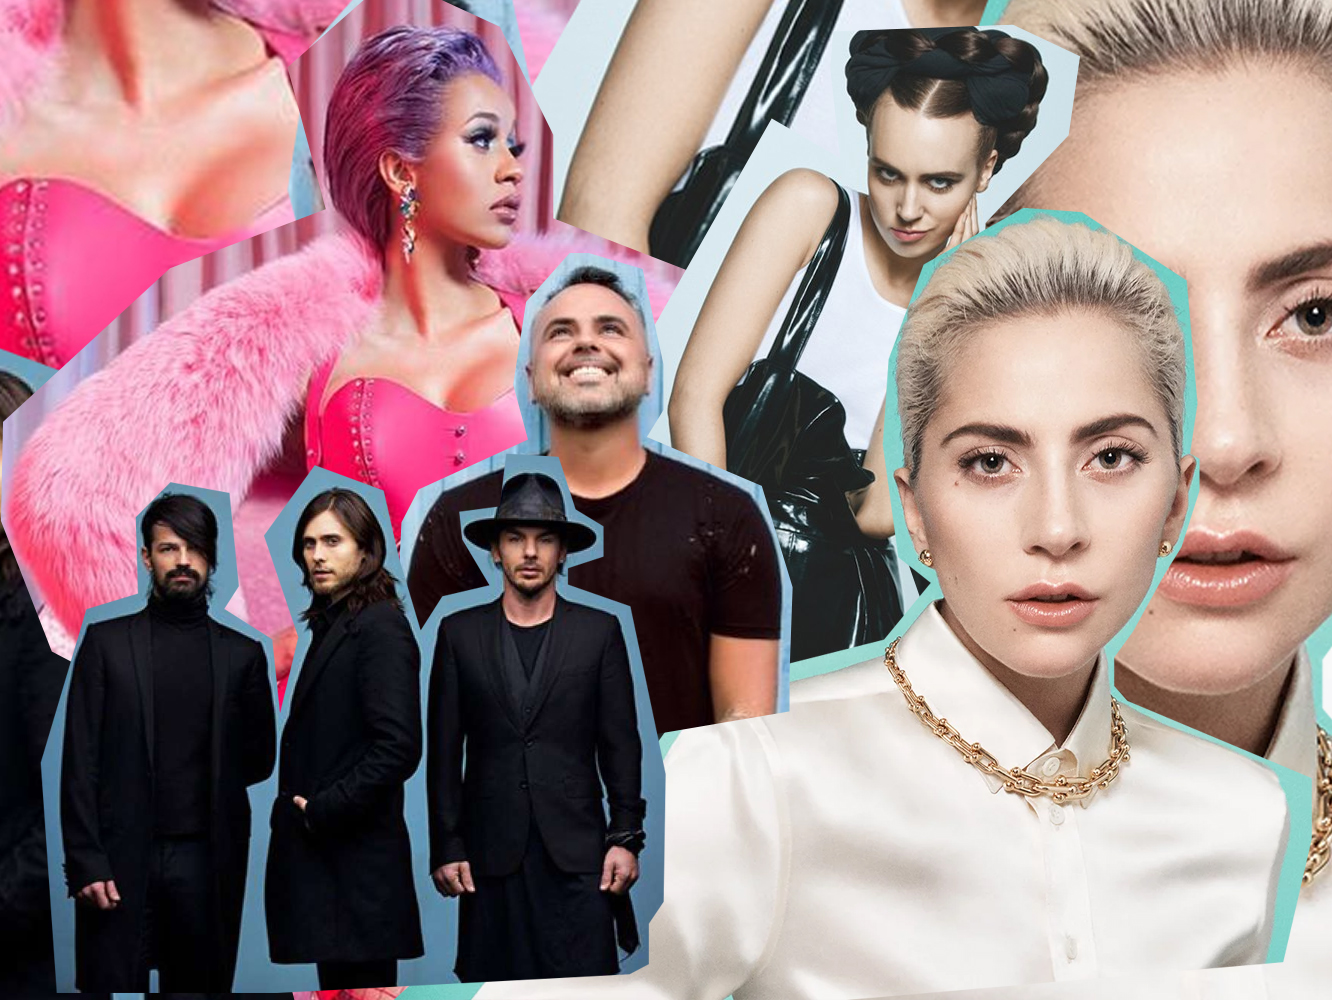  Music Fridays | Lo nuevo de Lady Gaga, Cardi B, Mala Rodríguez o Sam Smith